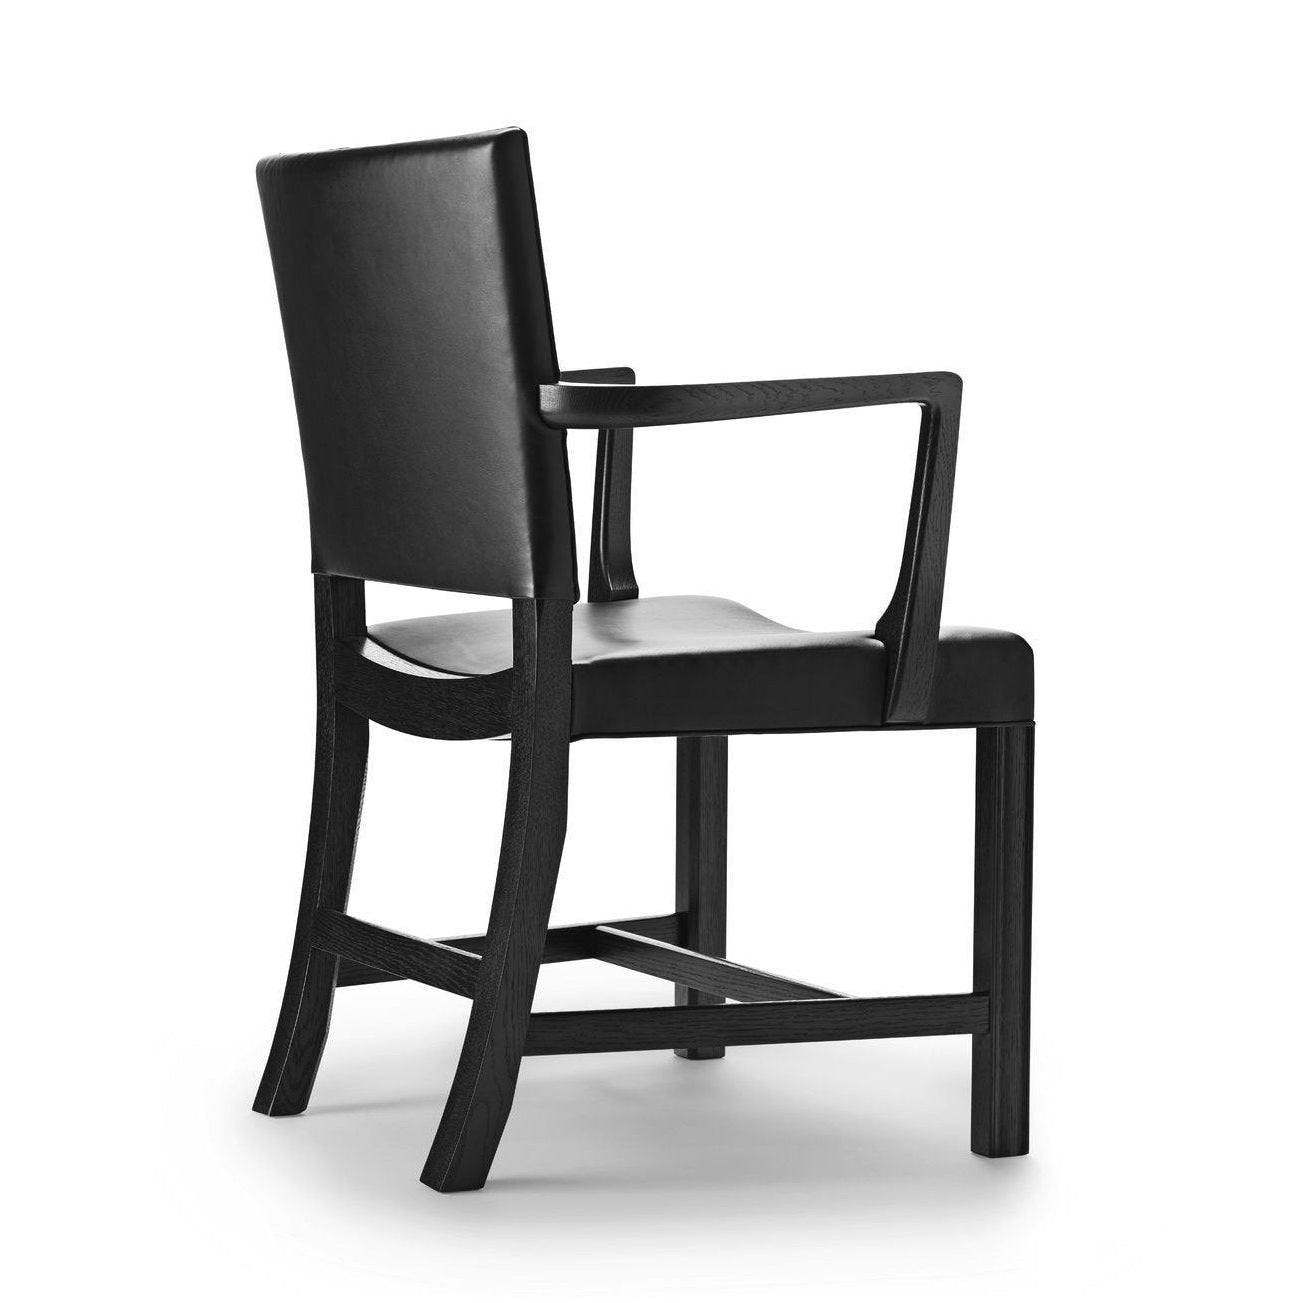 Carl Hansen KK37581 grand fauteuil rouge, chêne noir / cuir noir